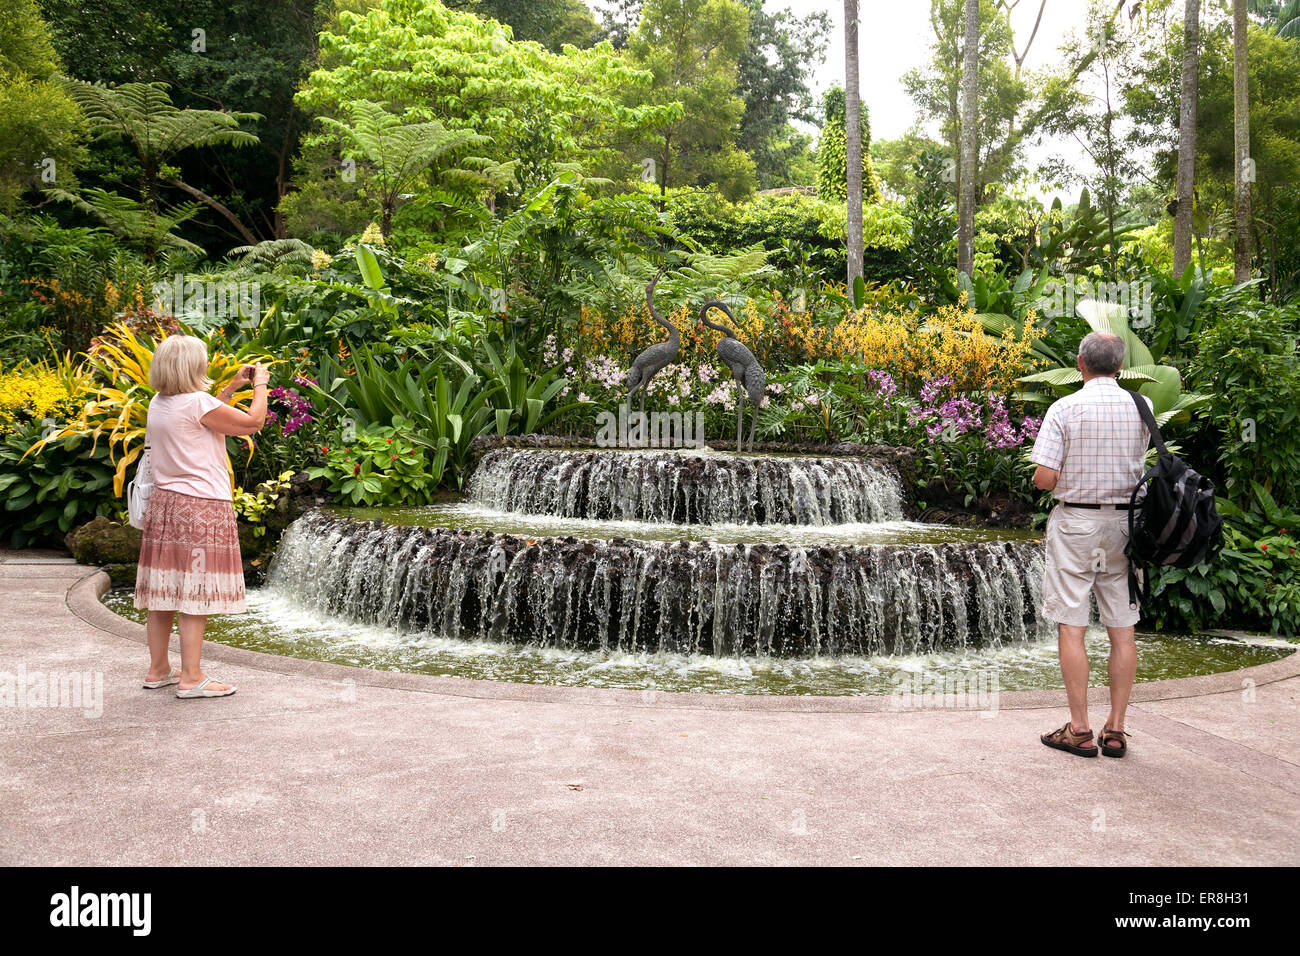 Two western tourists taking a photo of the fountain, Singapore Botanic gardens, Singapore Asia Stock Photo